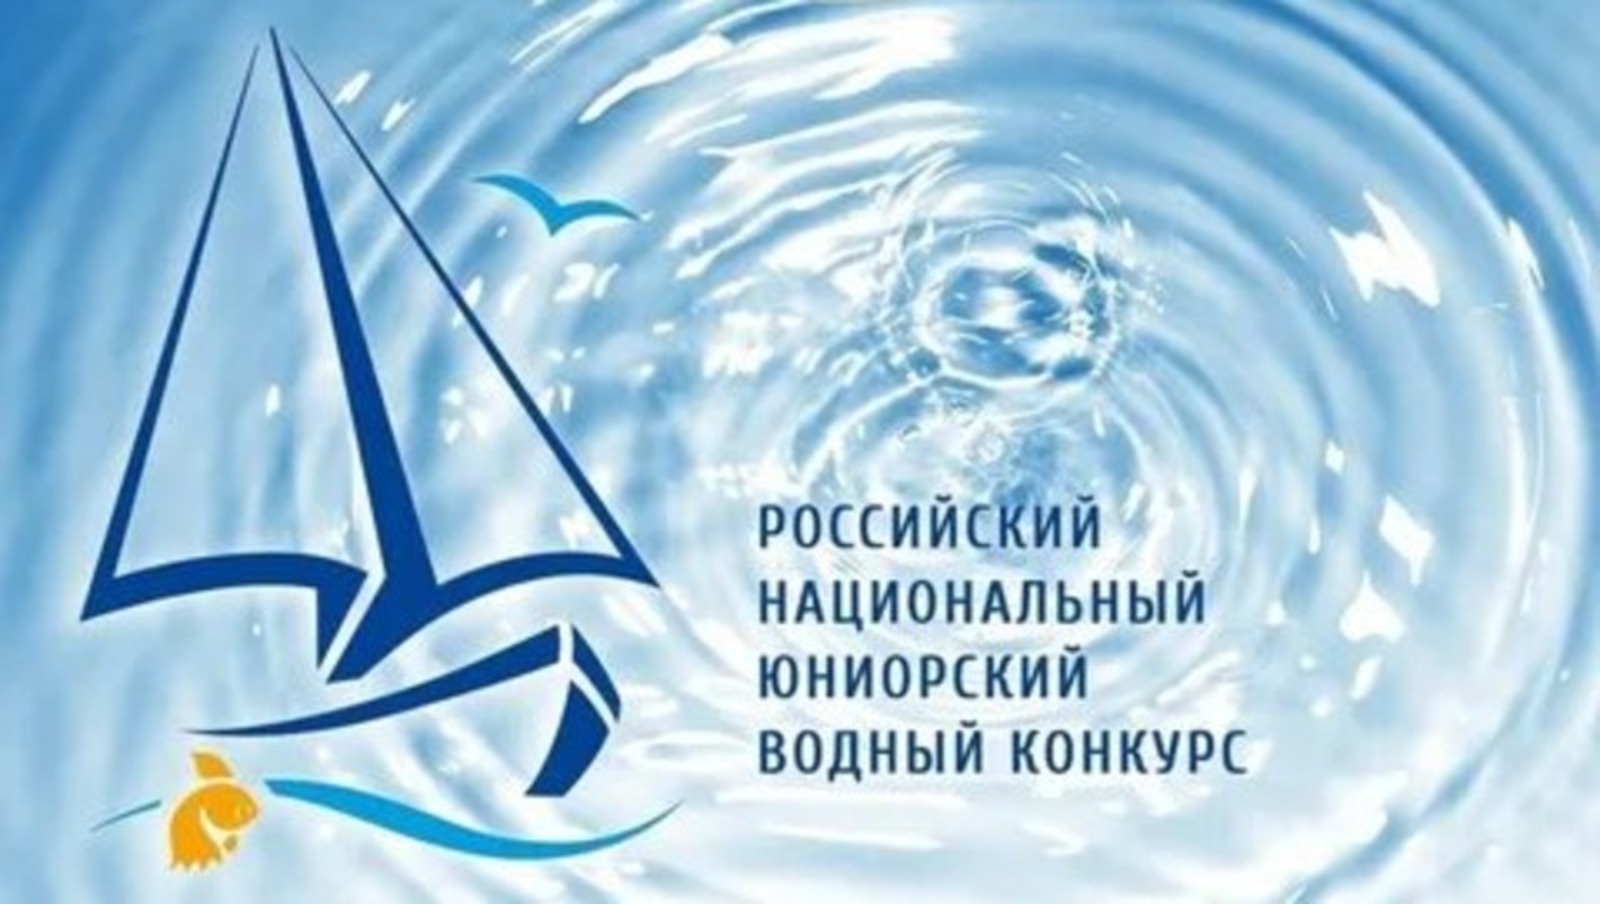 В Башкирии стартует региональный этап Российского Национального юниорского водного конкурса